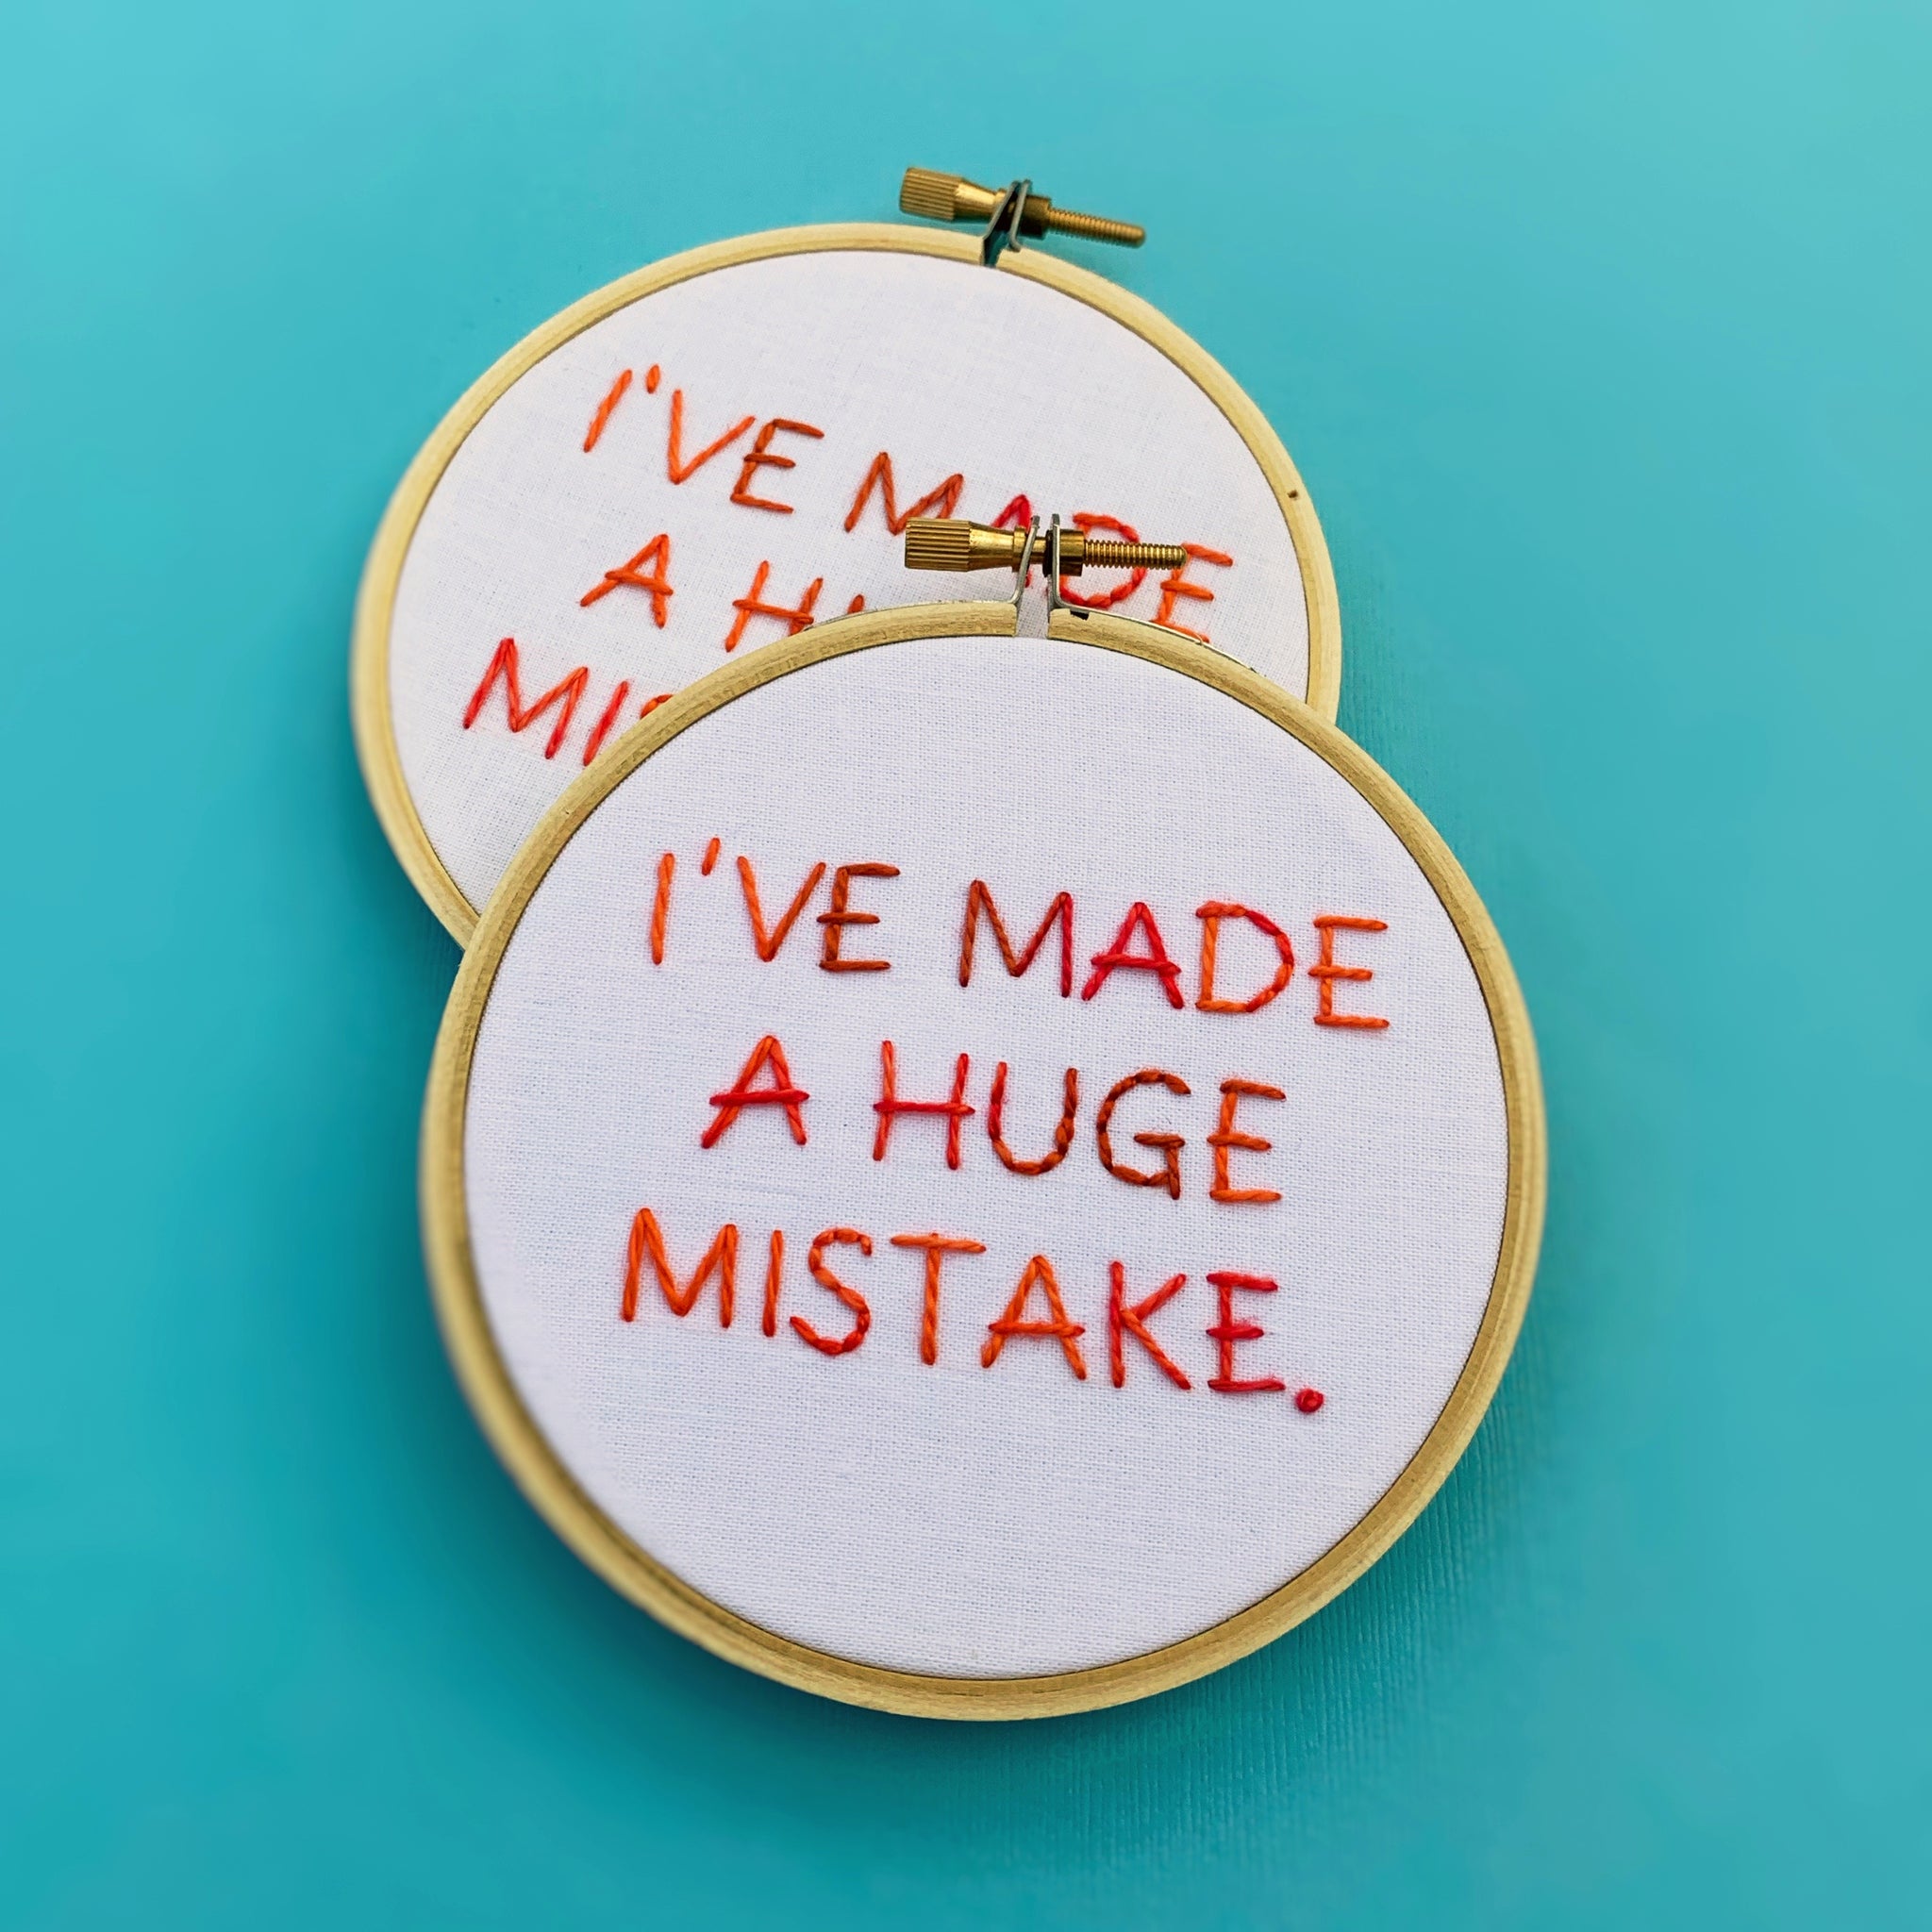 I'VE MADE A HUGE MISTAKE / Arrested Development embroidery hoop